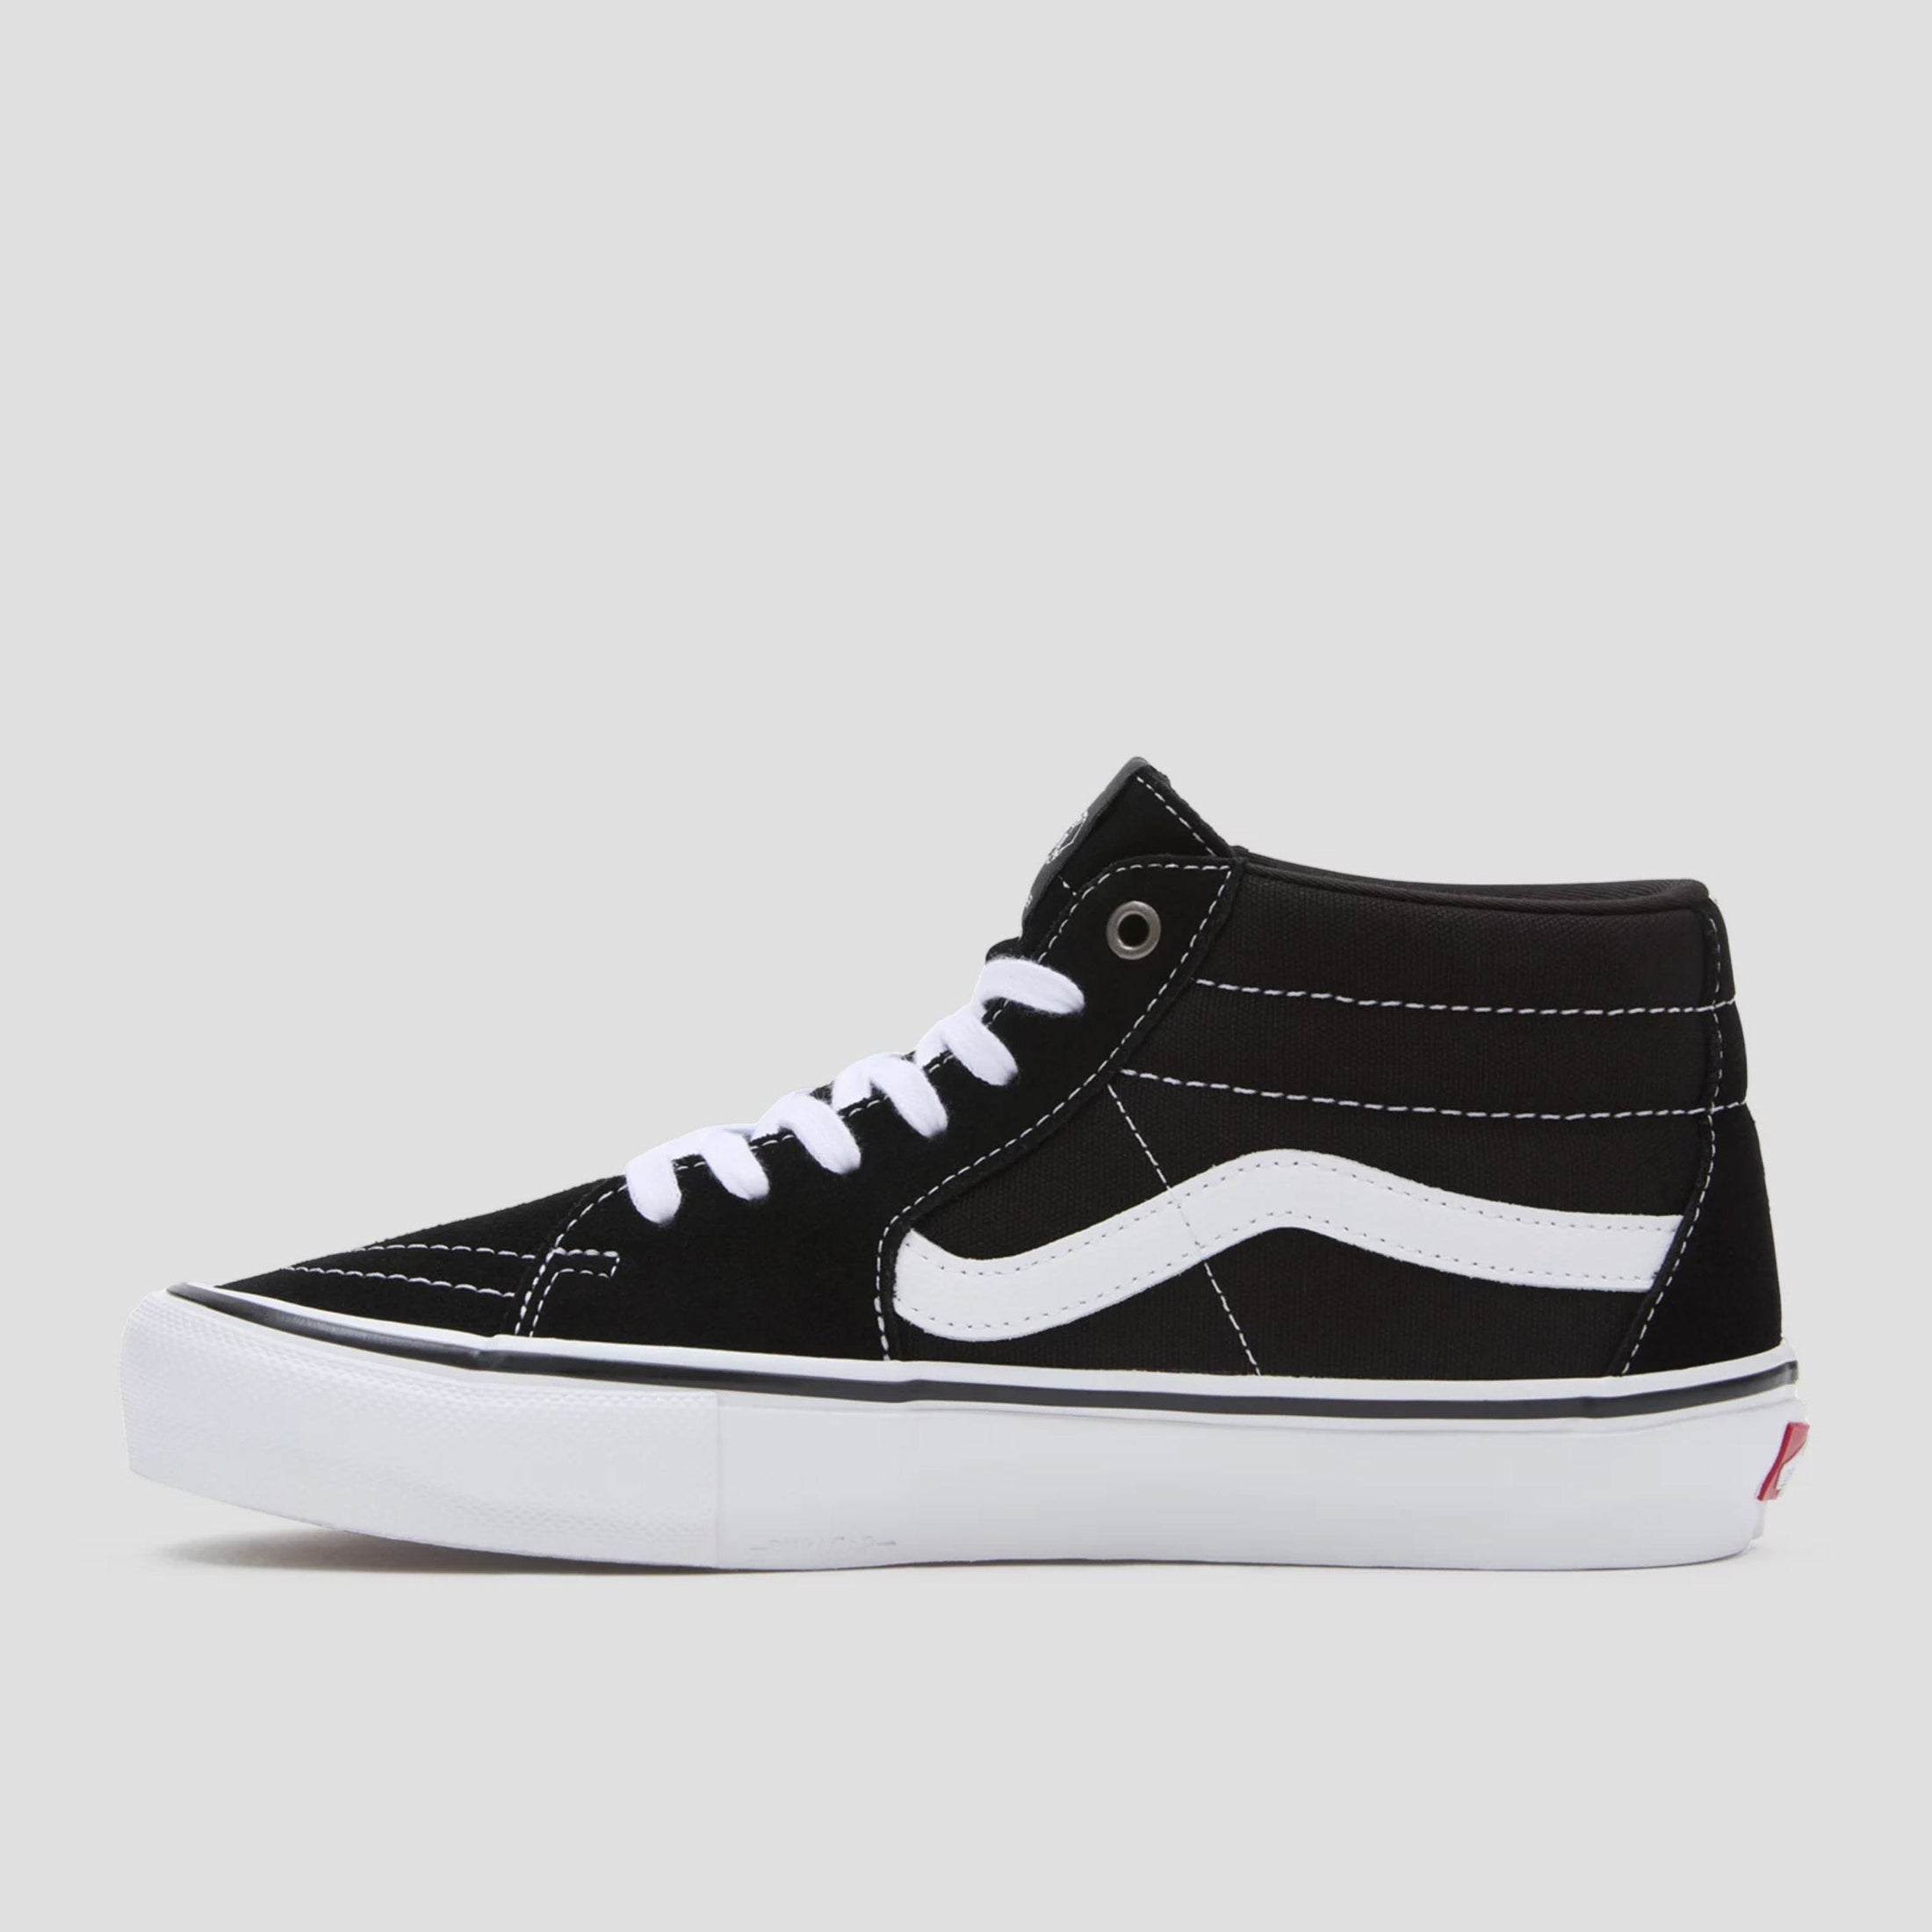 Vans Skate Grosso Shoes Mid Black / White